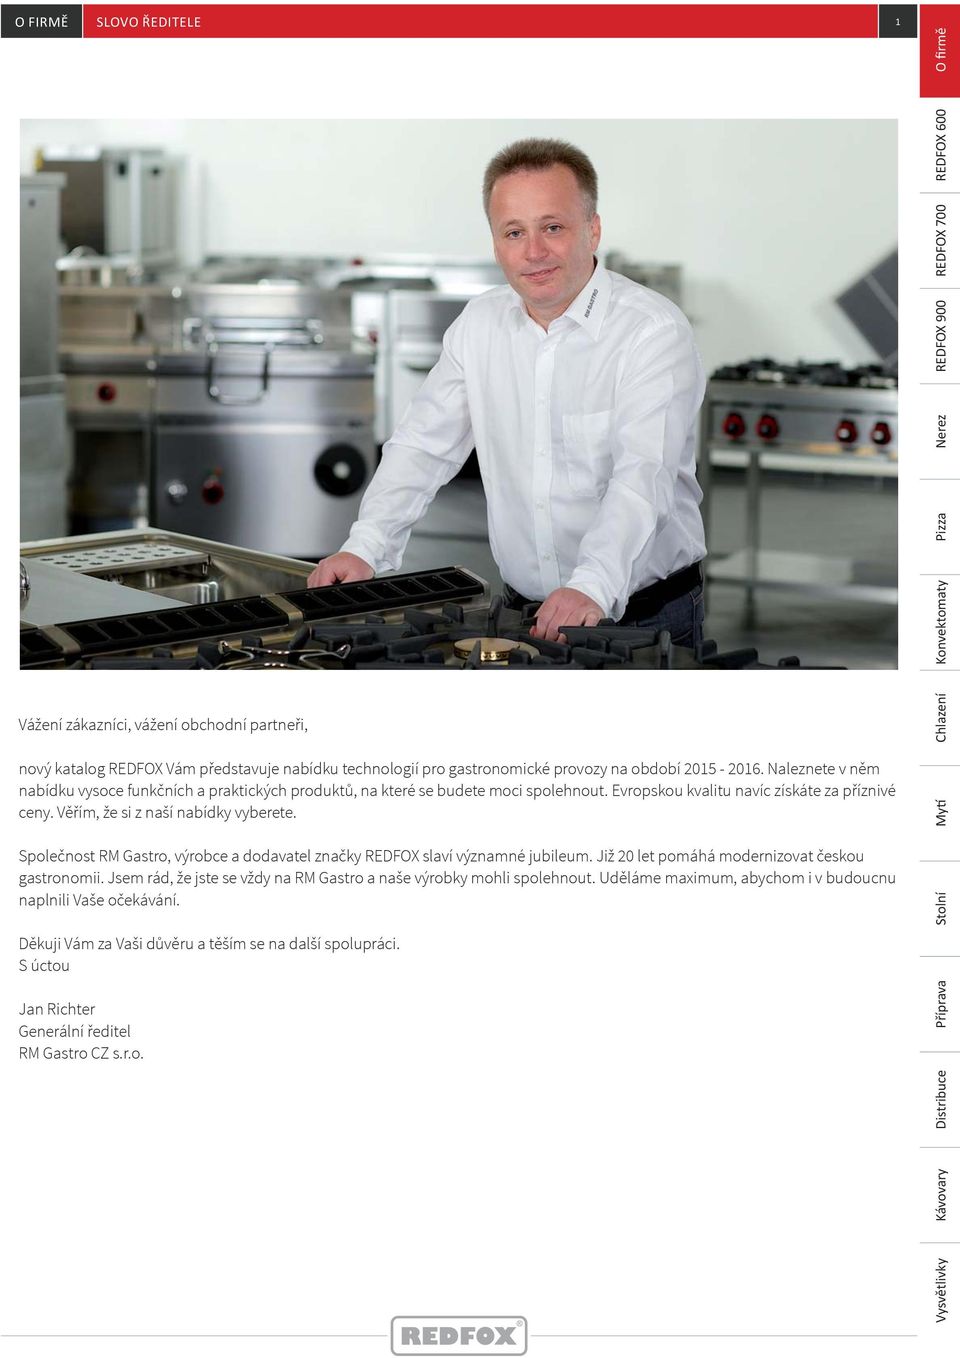 Společnost RM Gastro, výrobce a dodavatel značky REDFOX slaví významné jubileum. Již 20 let pomáhá modernizovat českou gastronomii.